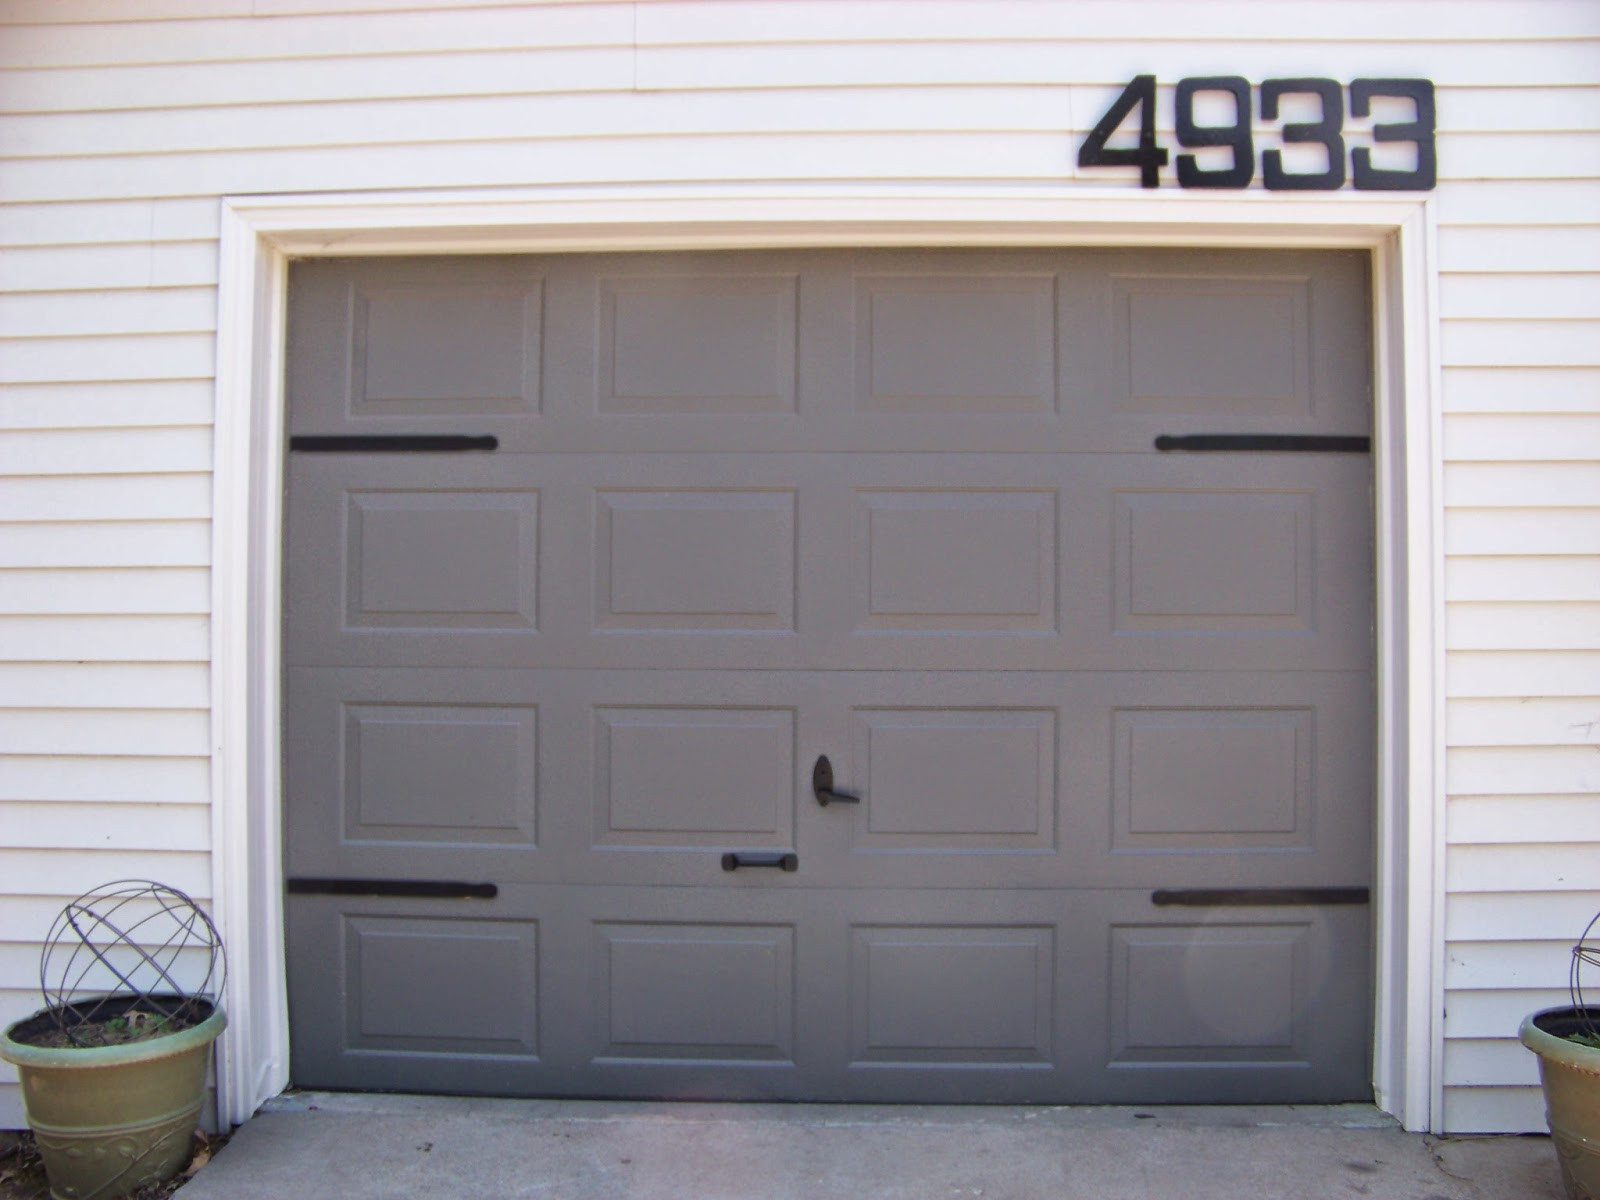 Best ideas about DIY Garage Doors
. Save or Pin 8 DIY Garage Door Updates Remodelaholic Now.